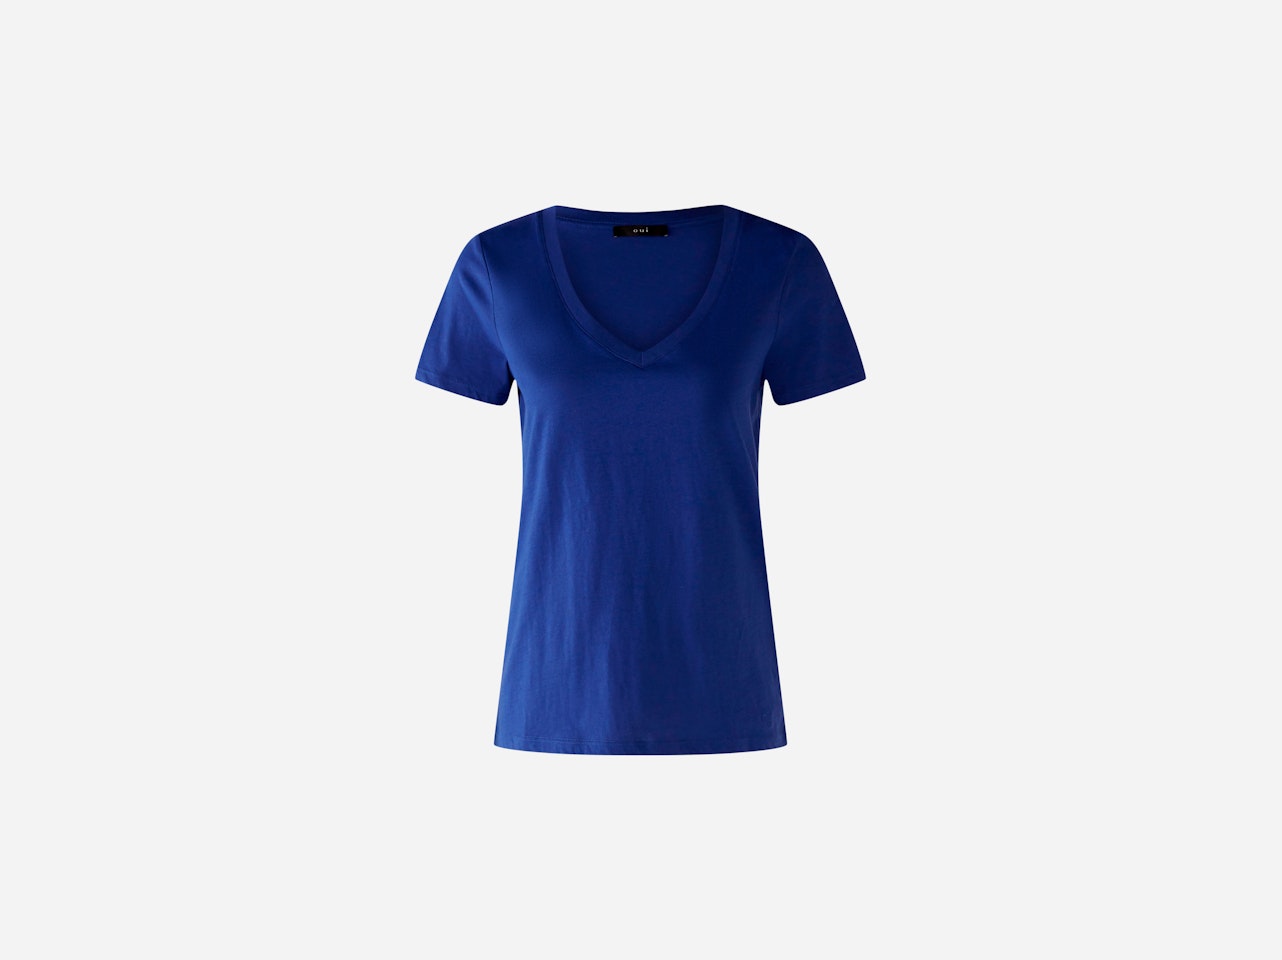 Bild 5 von CARLI T-shirt 100% organic cotton in blue | Oui